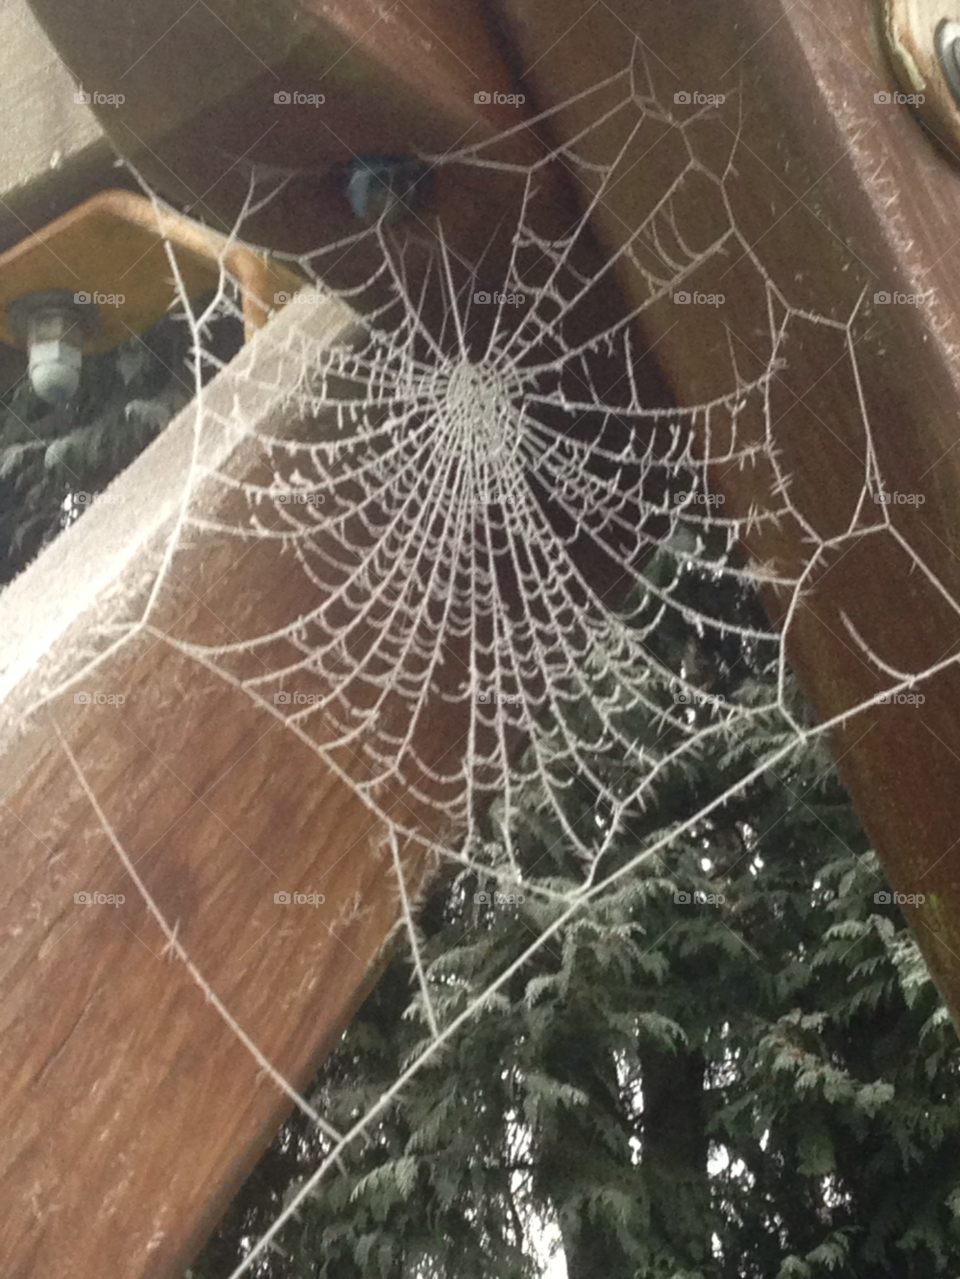 west sussex winter web spider by merchant746